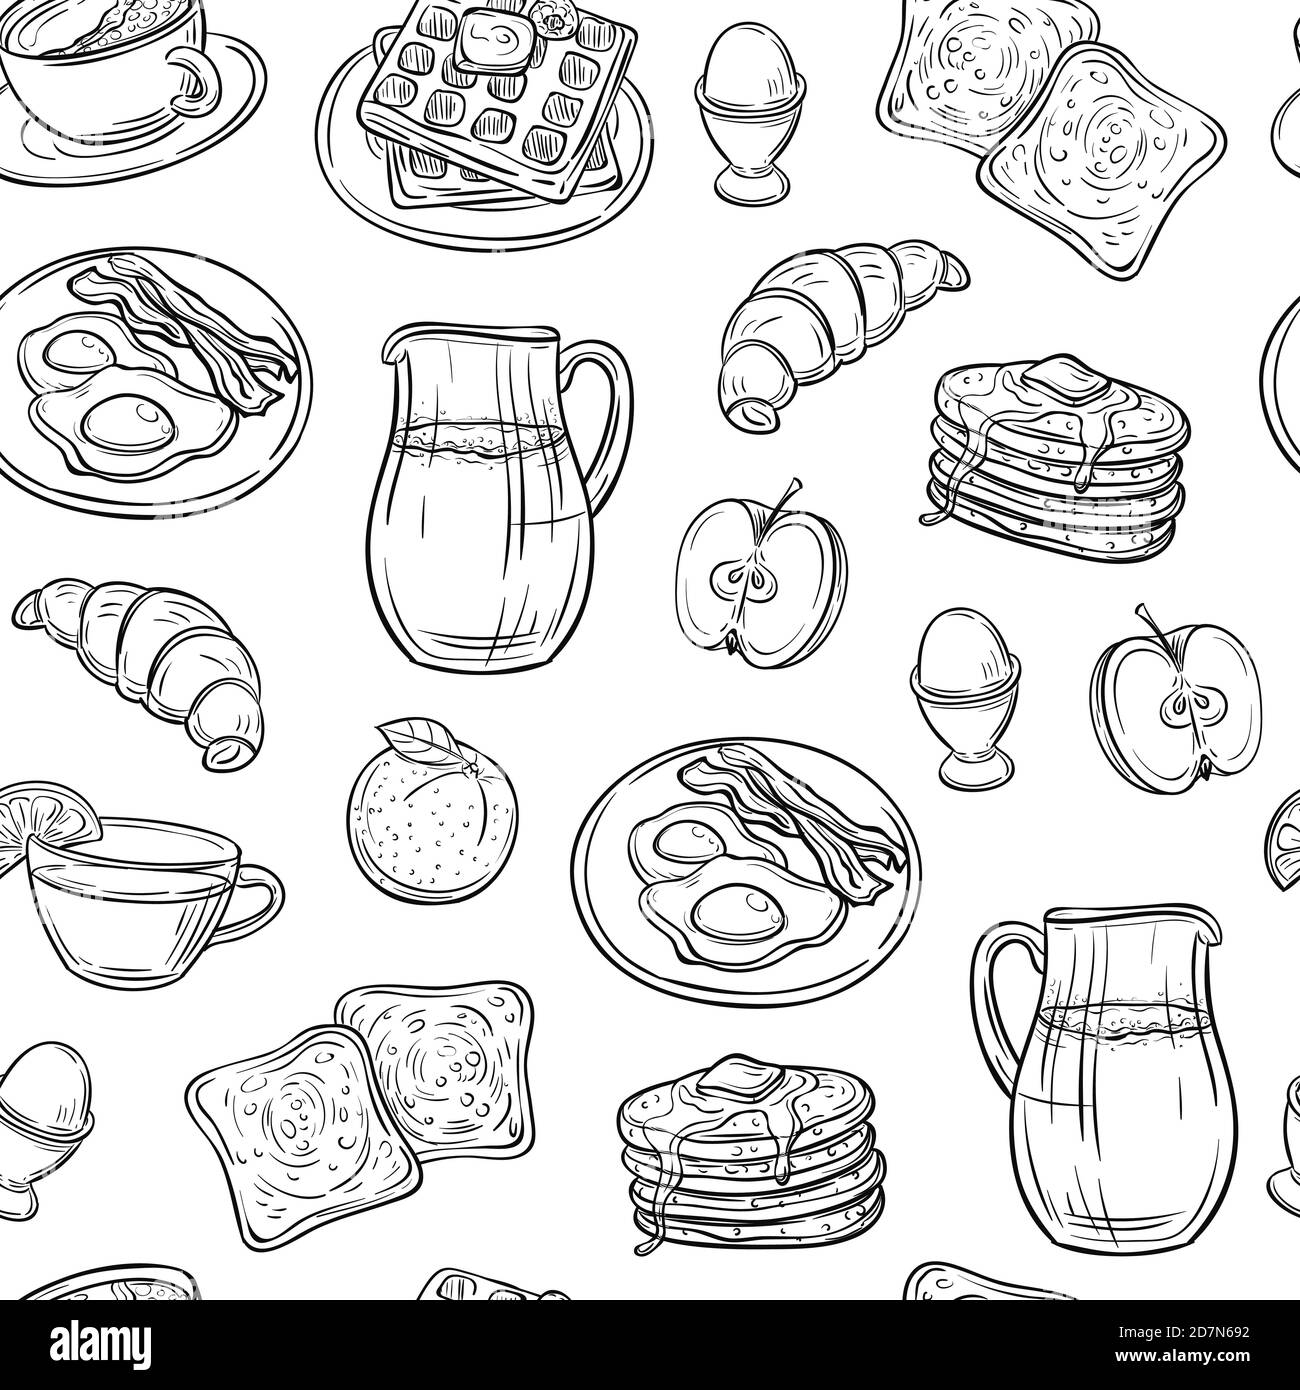 Frühstück Doodle Muster. Pfannkuchen Marmelade Käse Joghurt Wurst Tee Brot und Eier Skizze nahtlose Vektor-Textur. Abbildung: Frühstück, Getränke und Speisen Stock Vektor